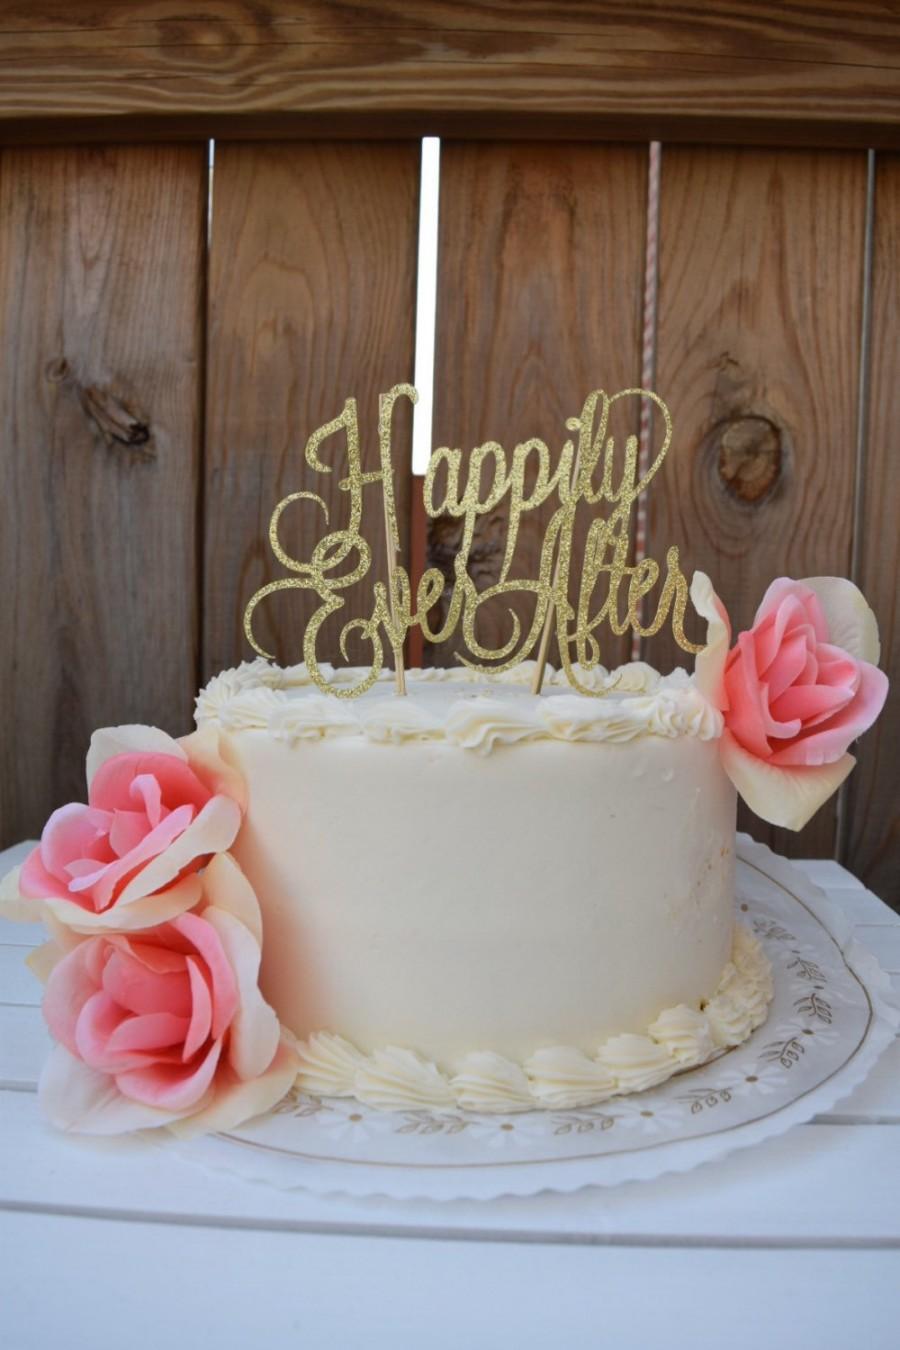 زفاف - Wedding Cake Topper, Happily Ever After Cake Topper, Cake Topper, Wedding, Wedding Cake, Bridal Shower Decor,